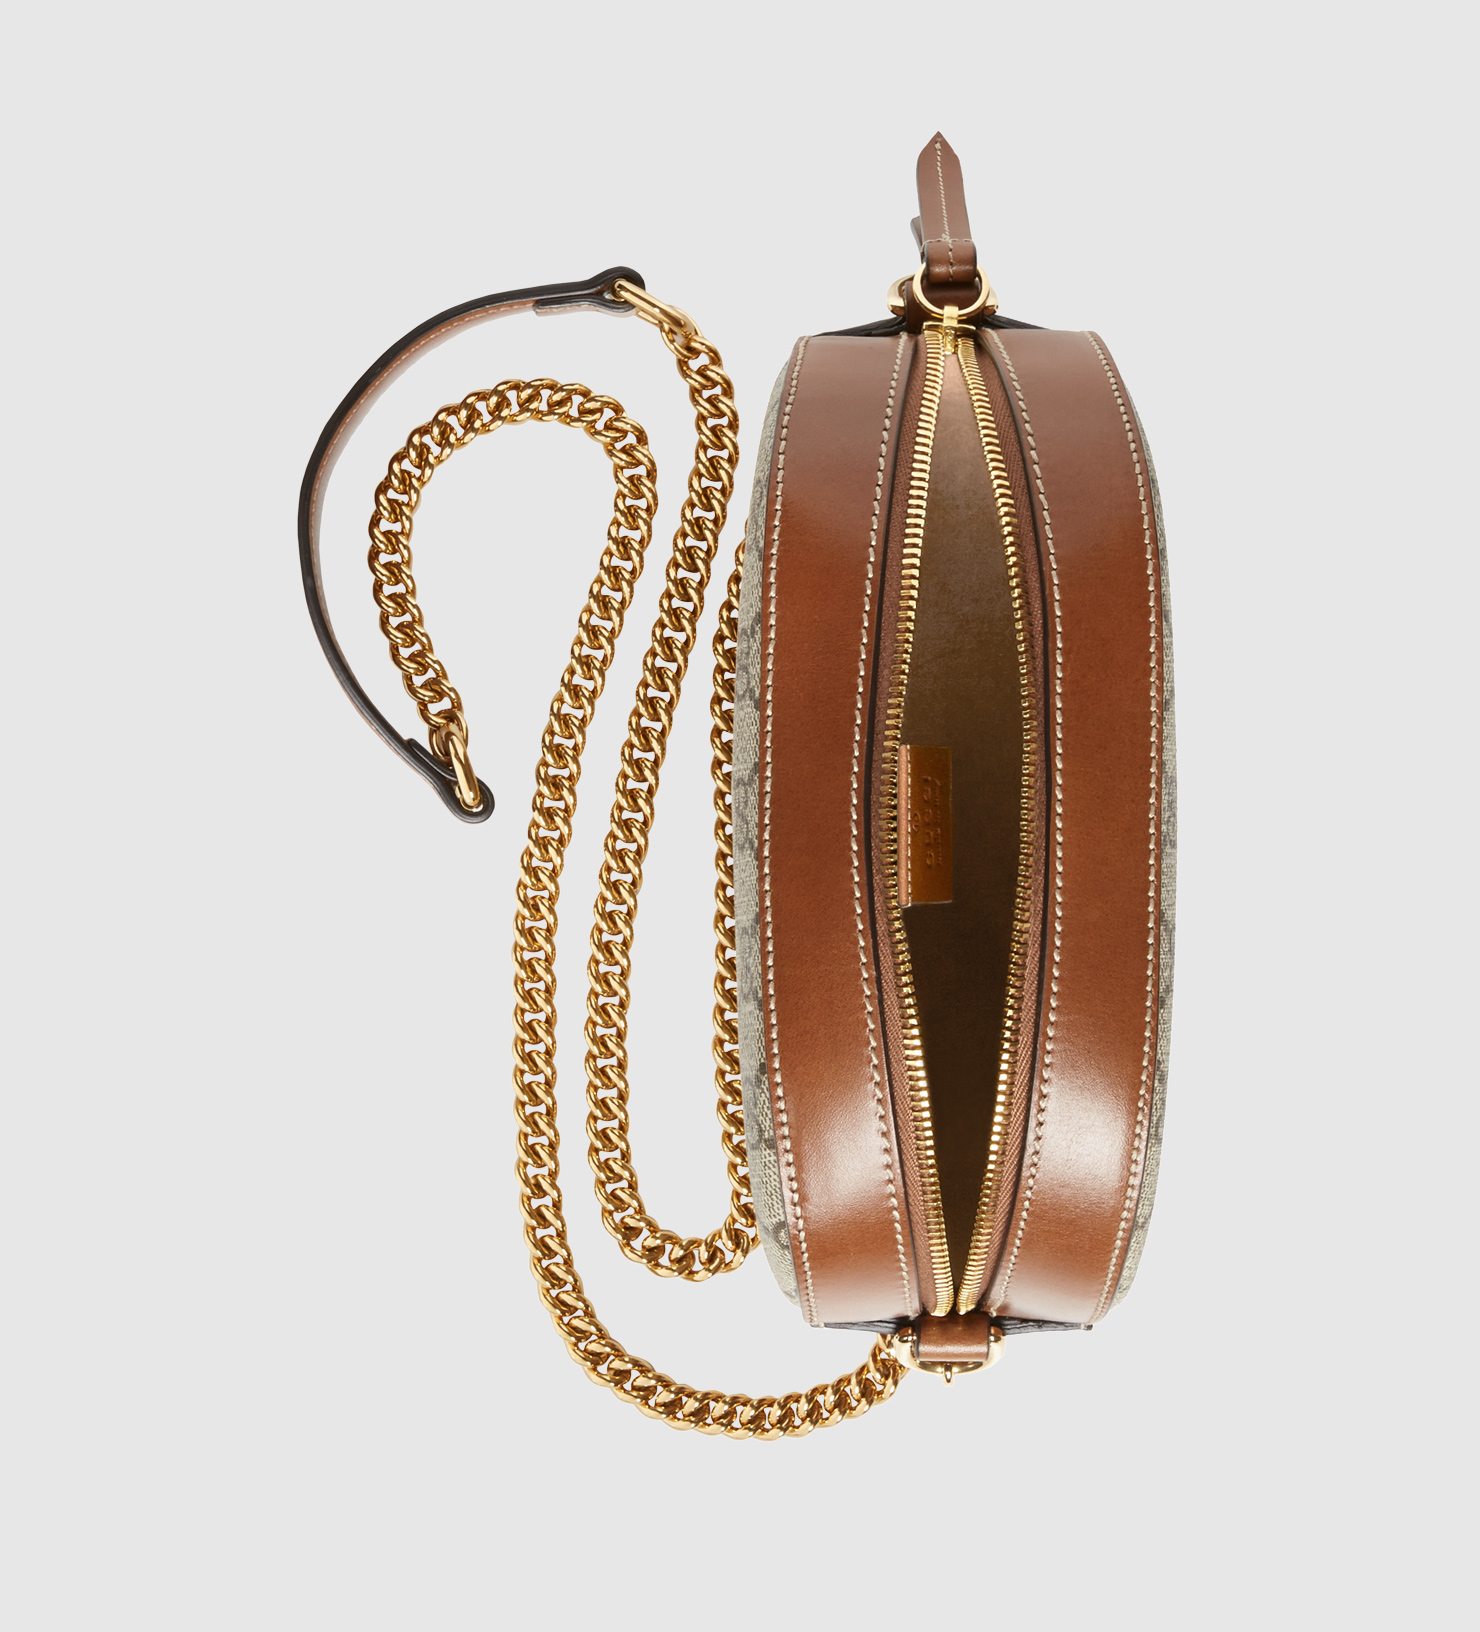 Lyst - Gucci Gg Supreme Mini Chain Bag in Brown